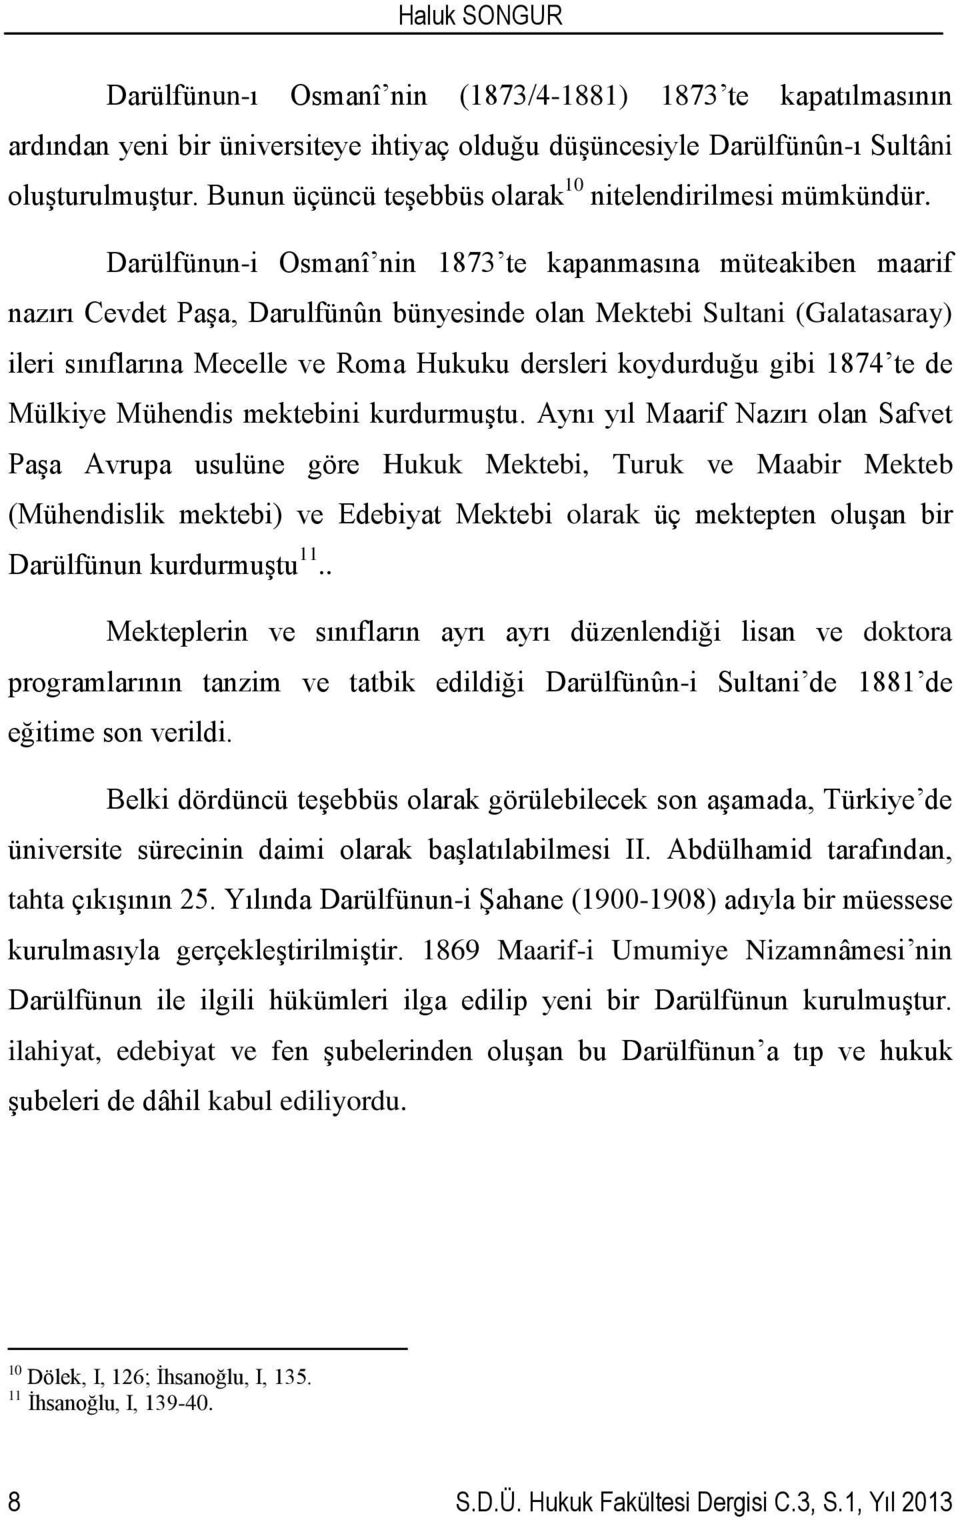 Darülfünun-i Osmanî nin 1873 te kapanmasına müteakiben maarif nazırı Cevdet Paşa, Darulfünûn bünyesinde olan Mektebi Sultani (Galatasaray) ileri sınıflarına Mecelle ve Roma Hukuku dersleri koydurduğu